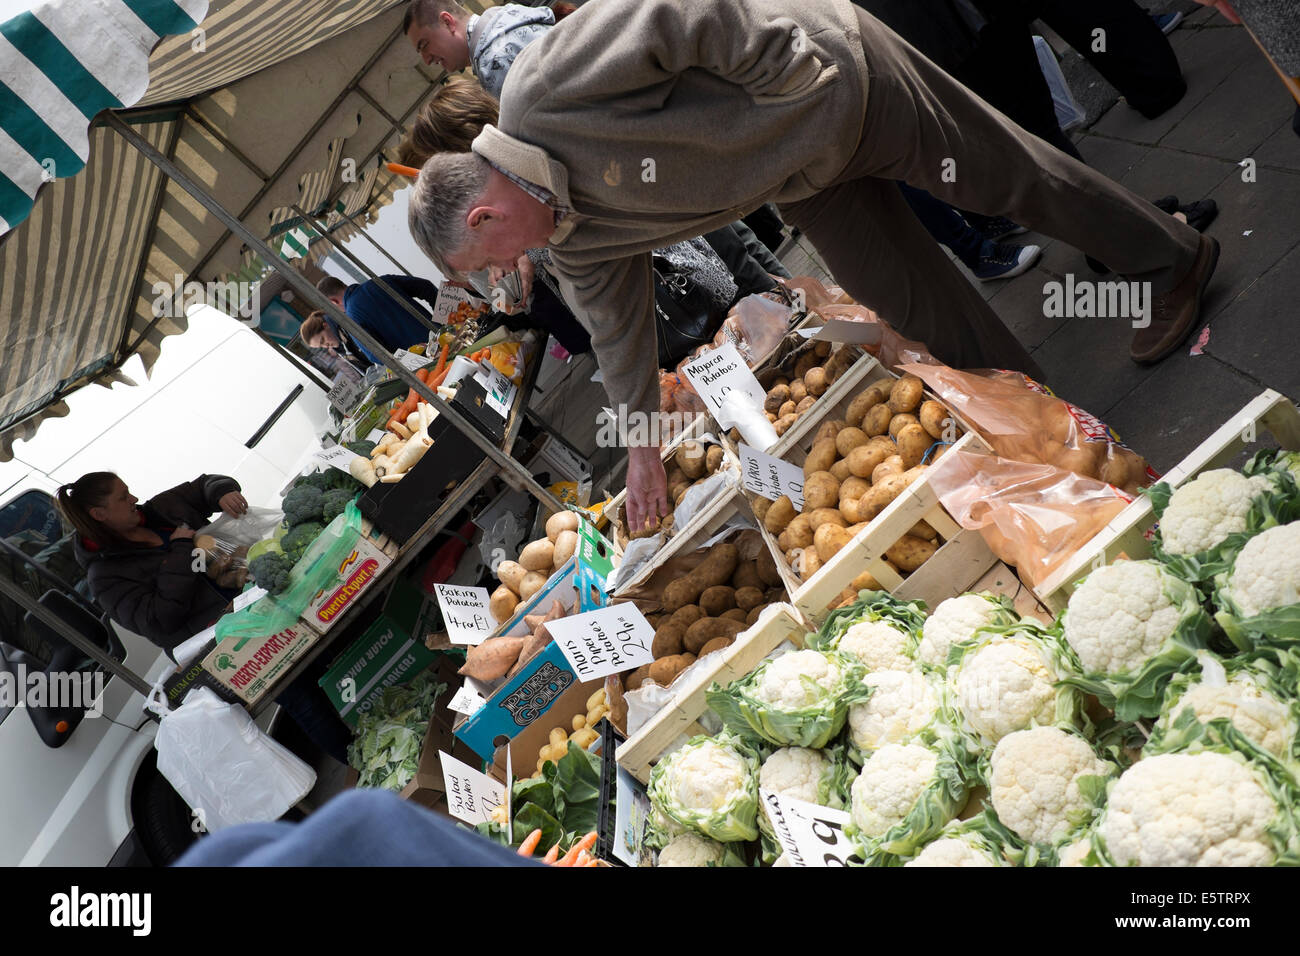 Mercato degli Agricoltori picking Acquisto di Veg di patate Foto Stock